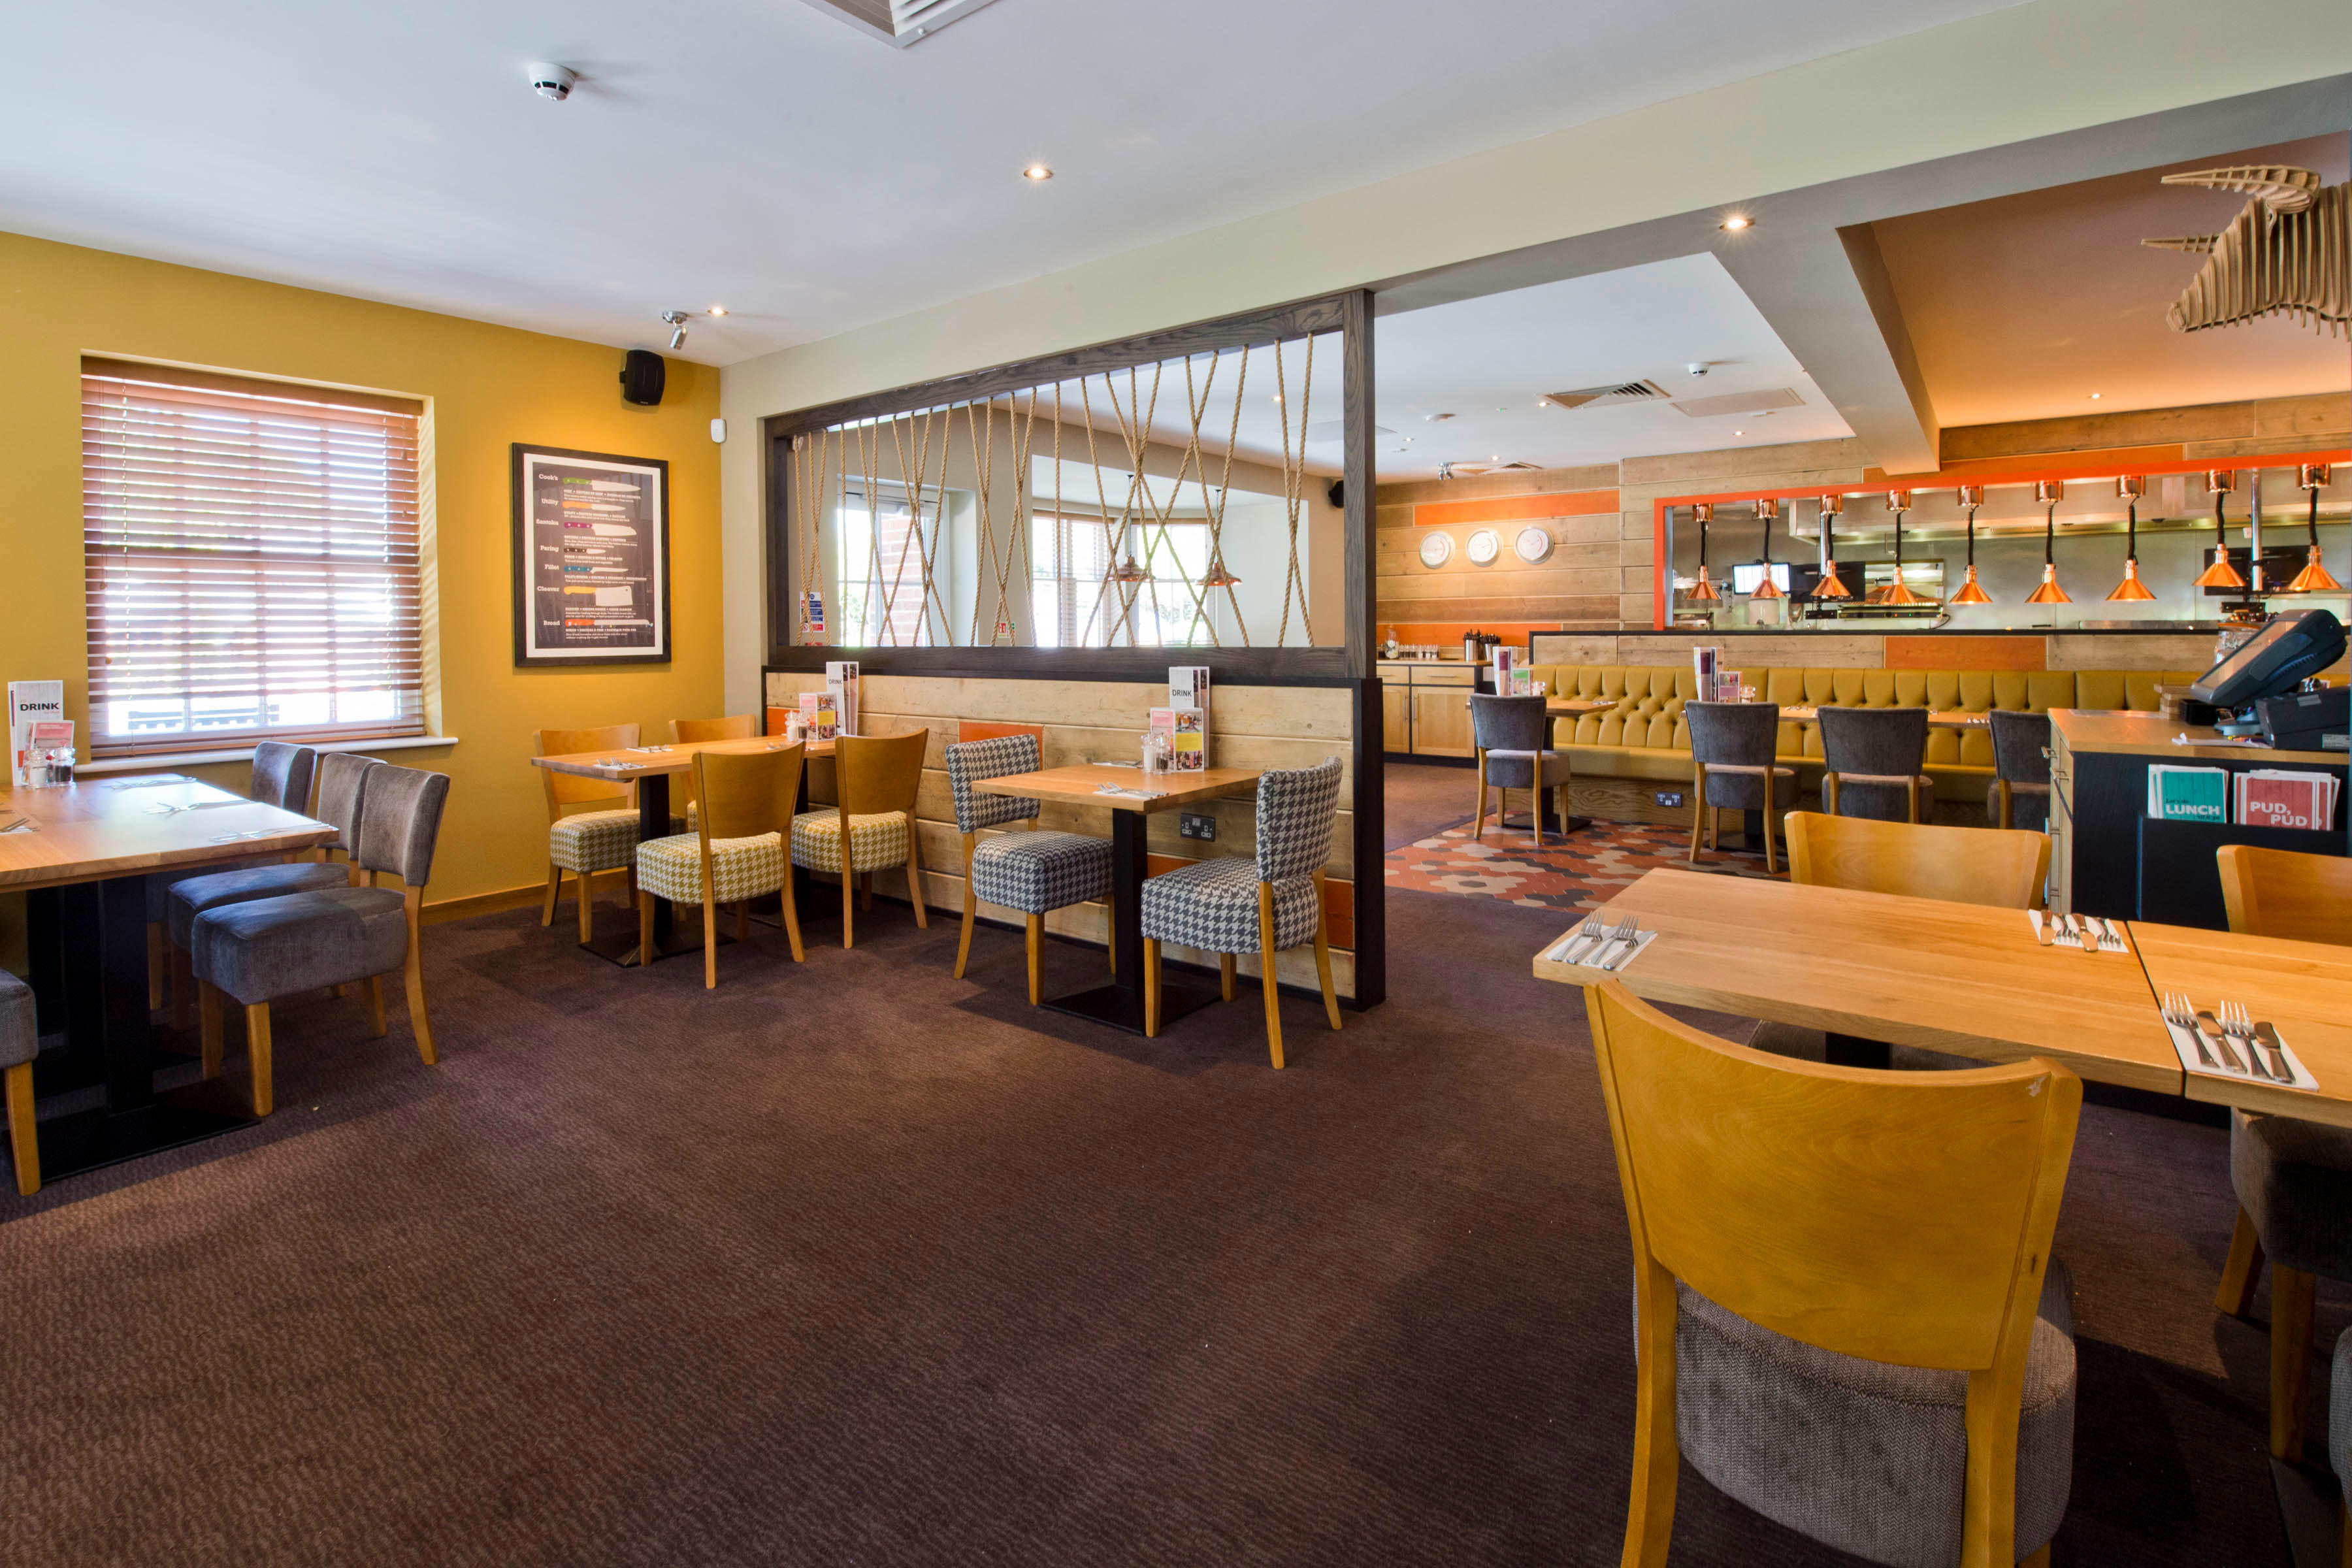 Beefeater restaurant Premier Inn Farnham hotel Farnham 03332 346490